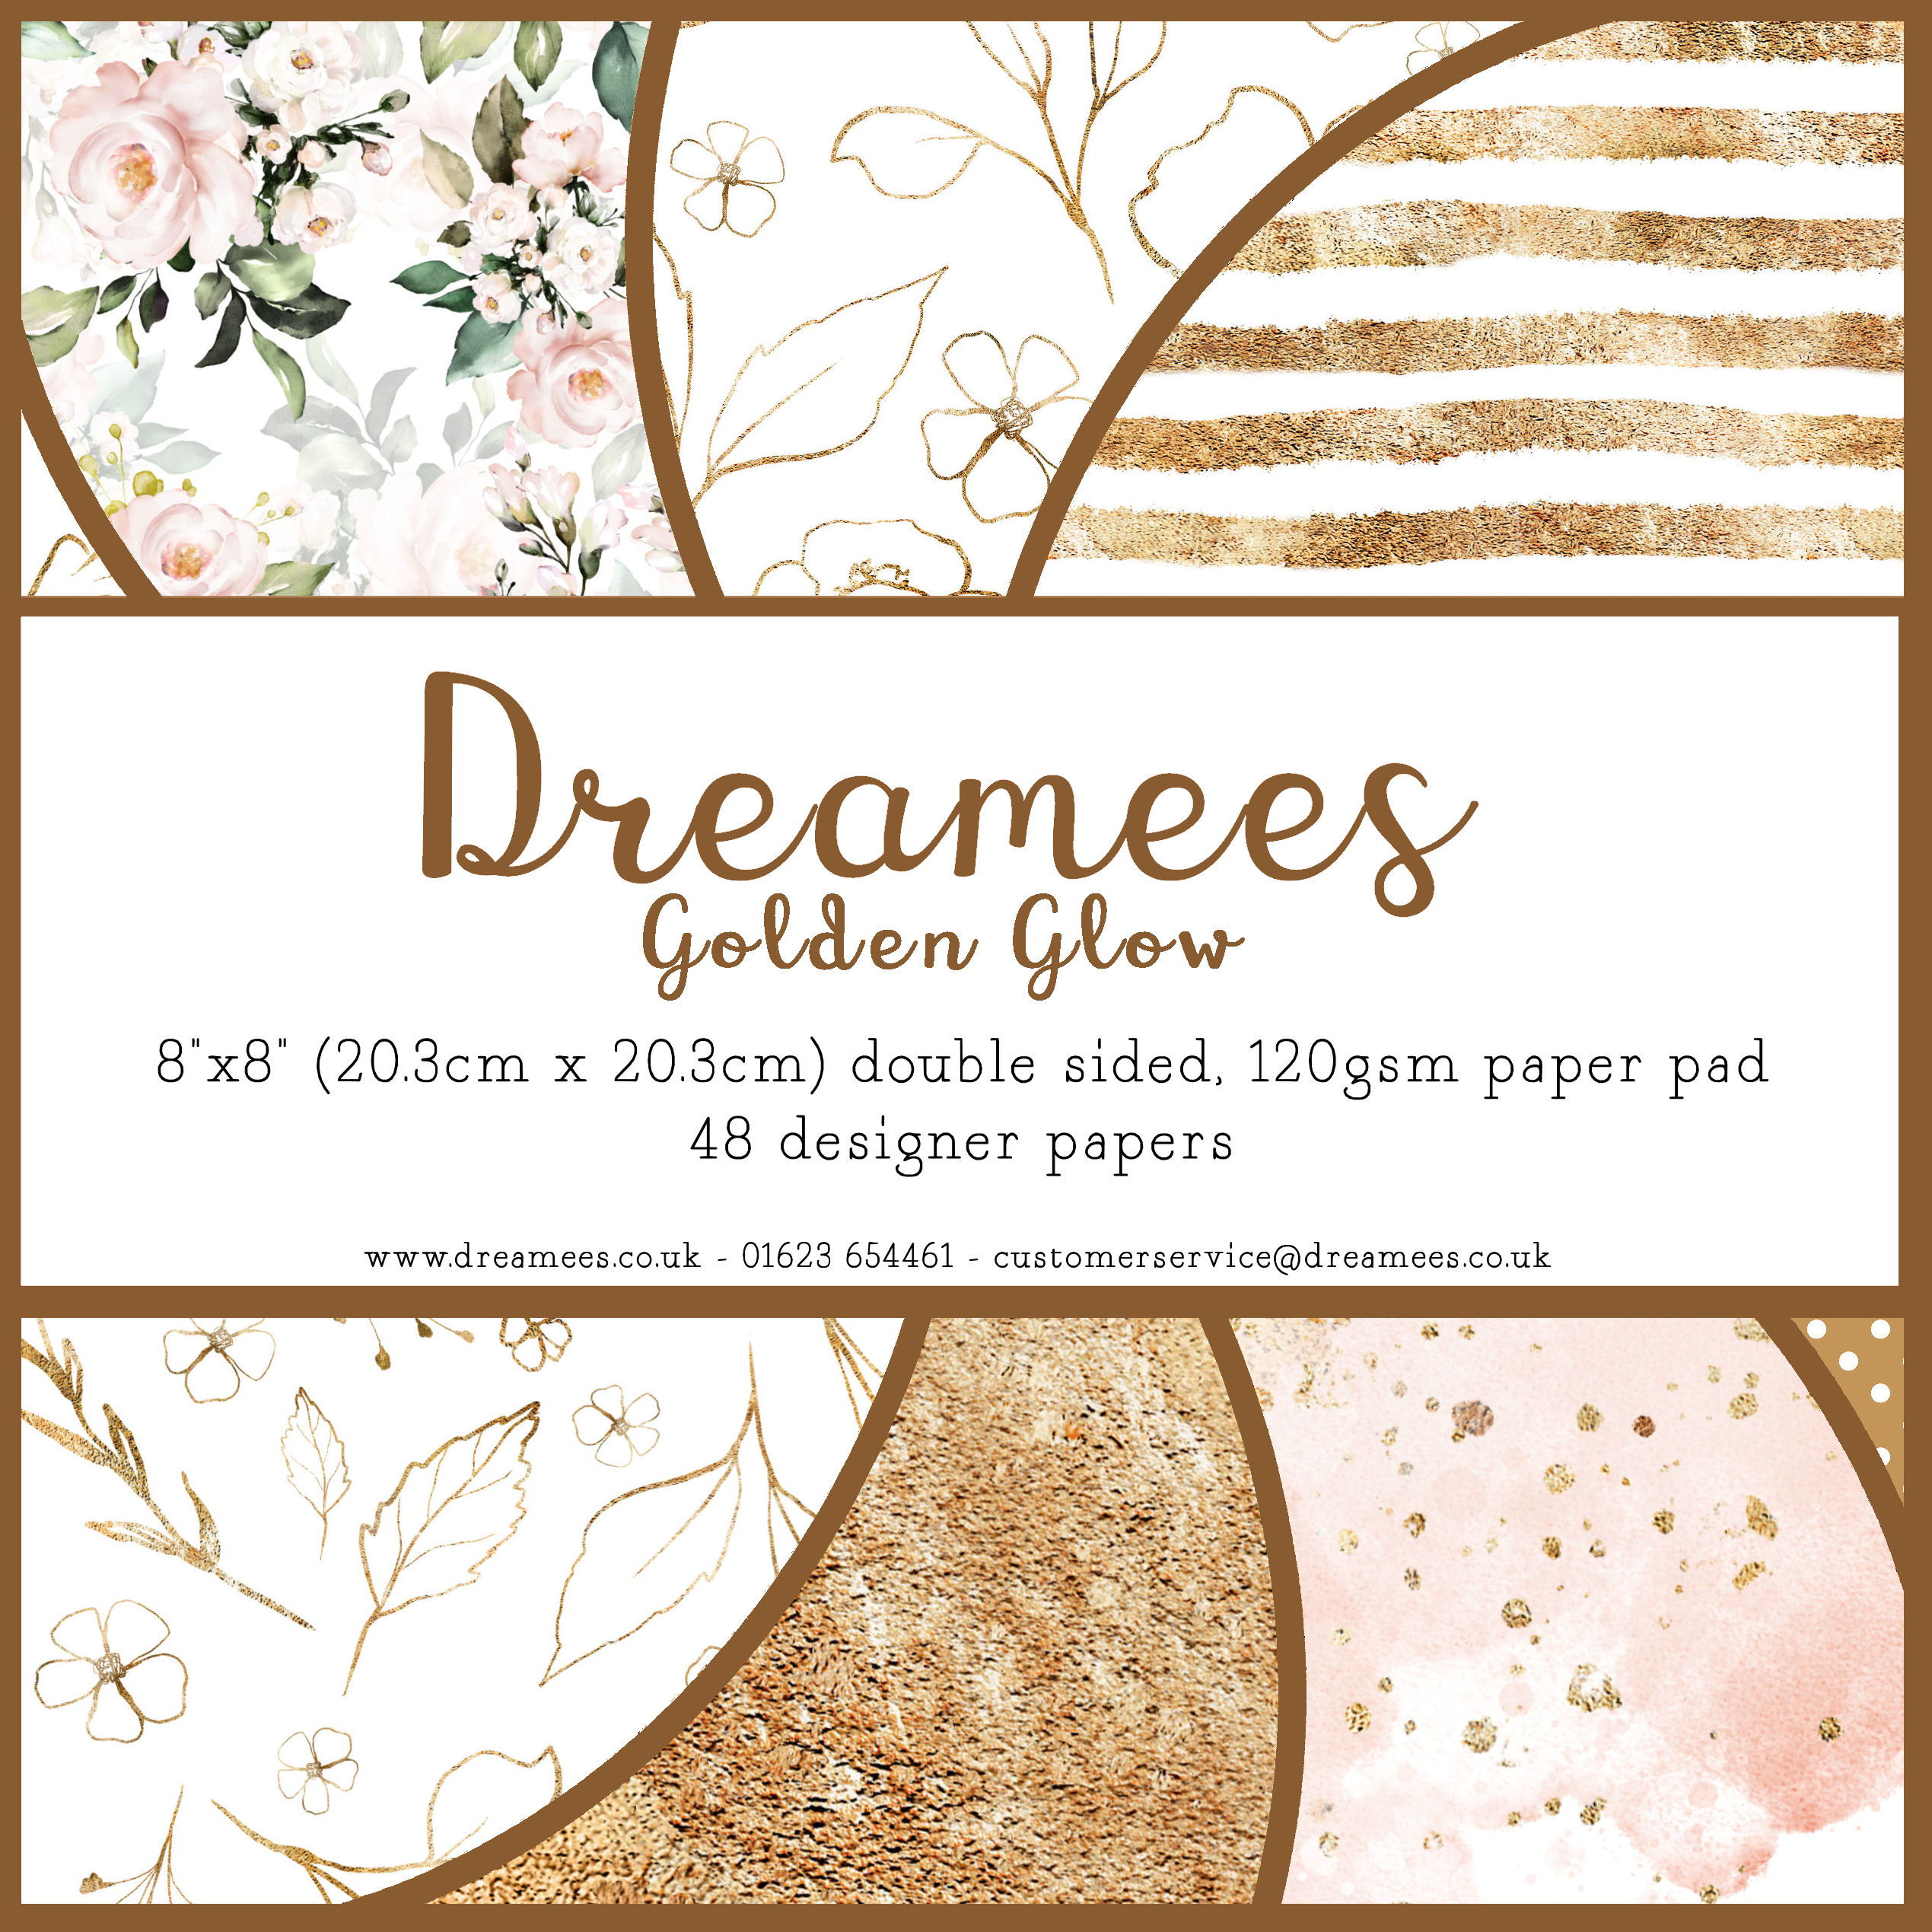 Dreamees Golden Glow 8x8 Paper Pad